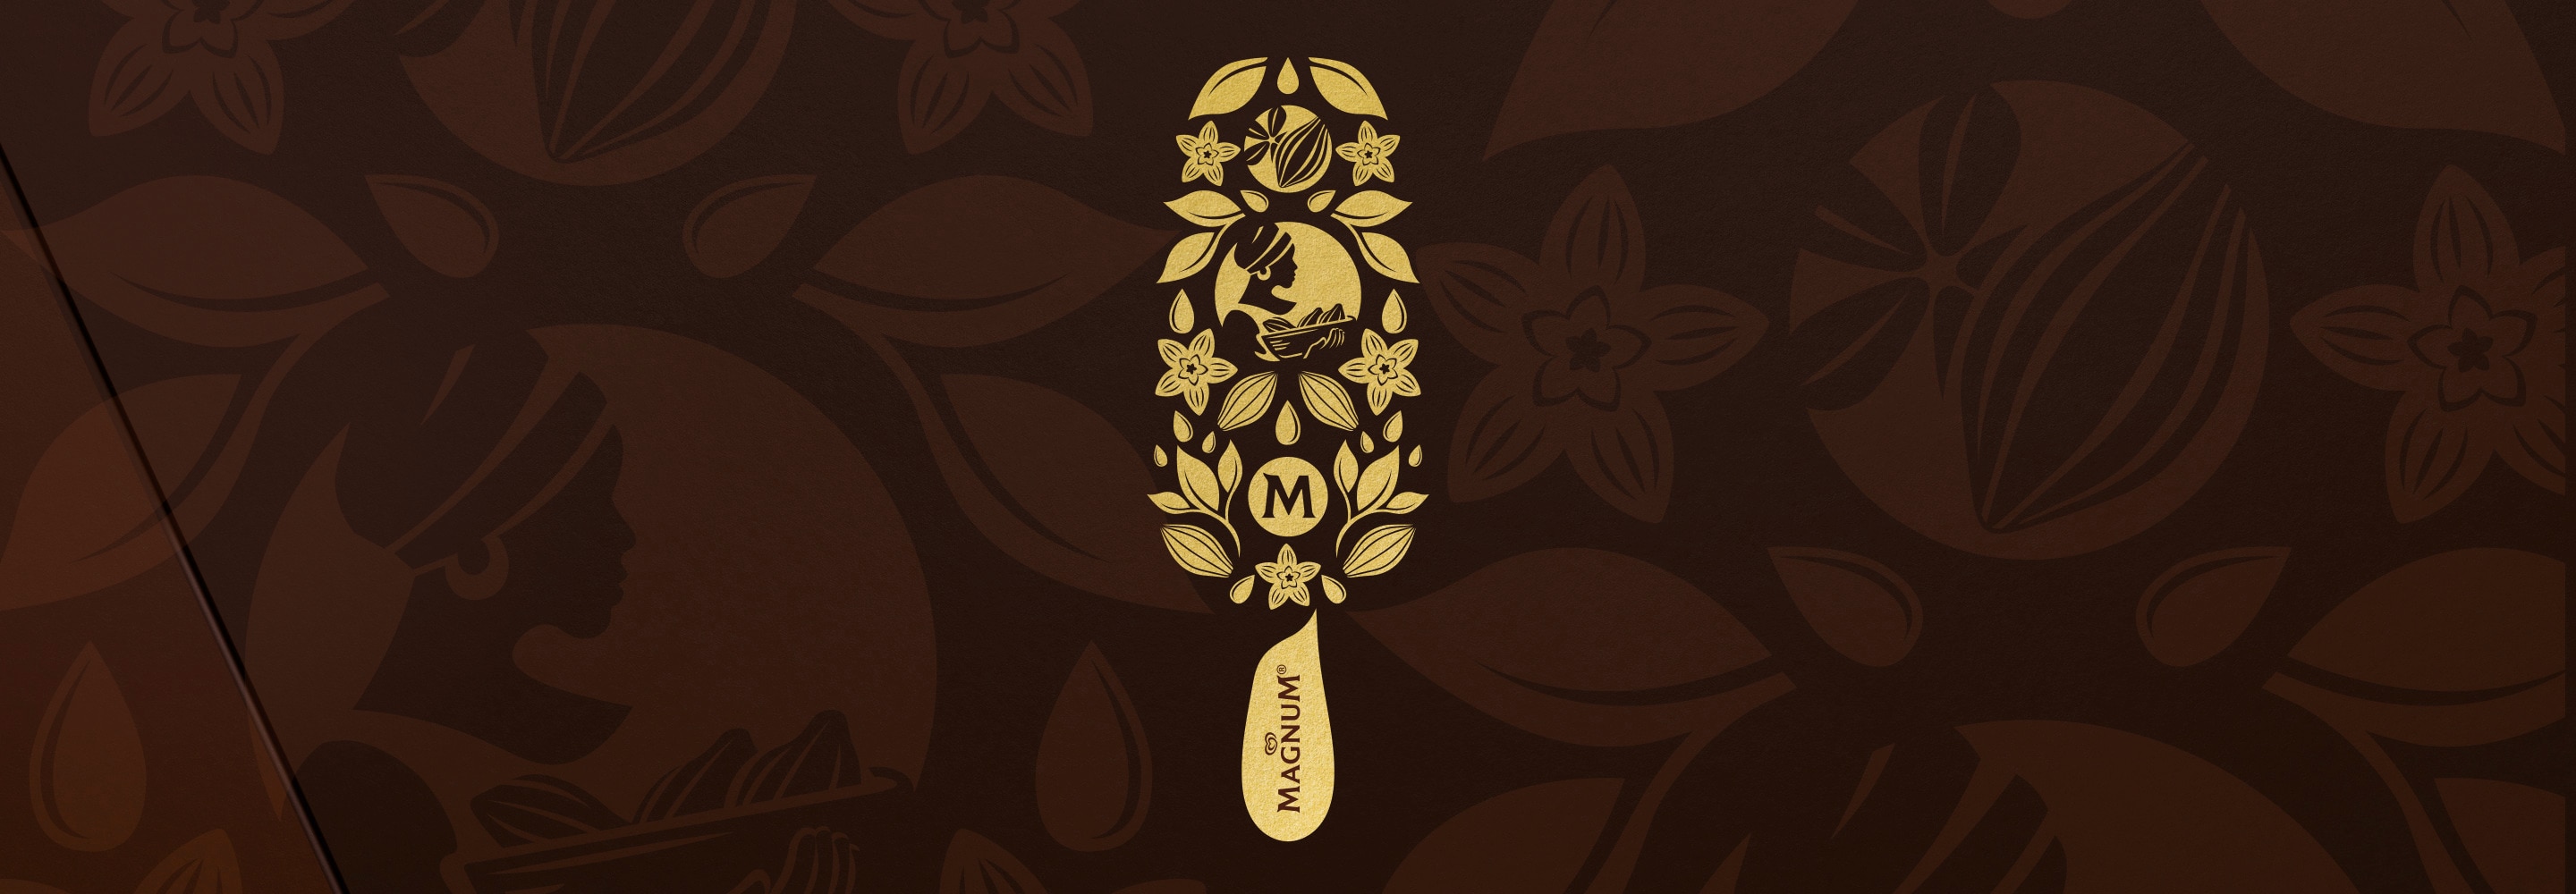 Illustrazione di un Magnum d'oro su  sfondo marrone realizzata con fiori di  vaniglia, baccelli di cacao, foglie e donna  africana con un foulard in testa che  porta un cesto di baccelli di cacao.